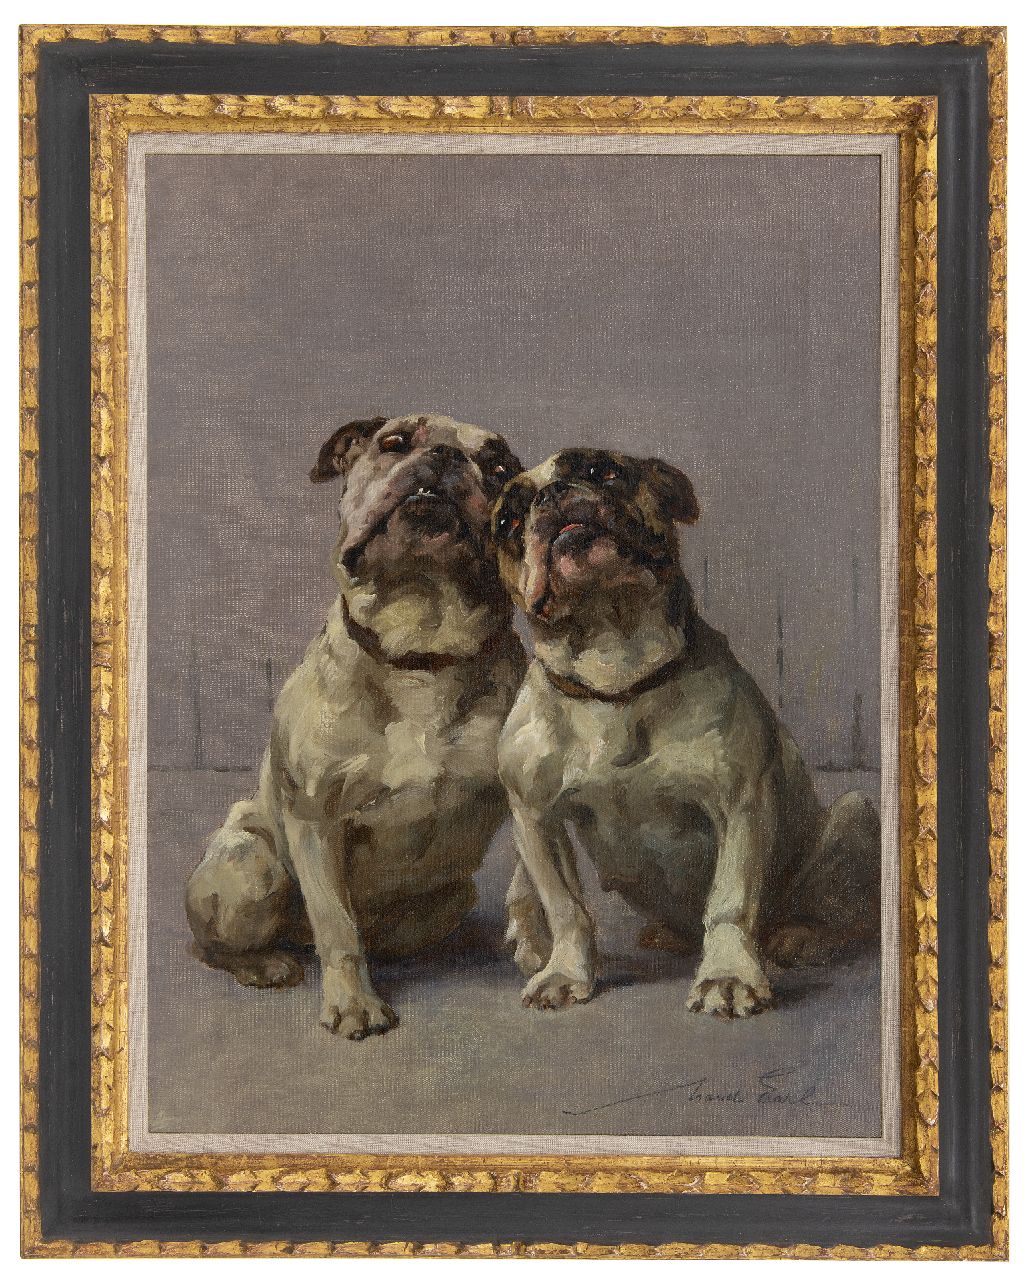 Earl M.A.  | 'Maud' Alice Earl | Schilderijen te koop aangeboden | Twee bulldoggen, olieverf op doek 61,5 x 45,9 cm, gesigneerd rechtsonder